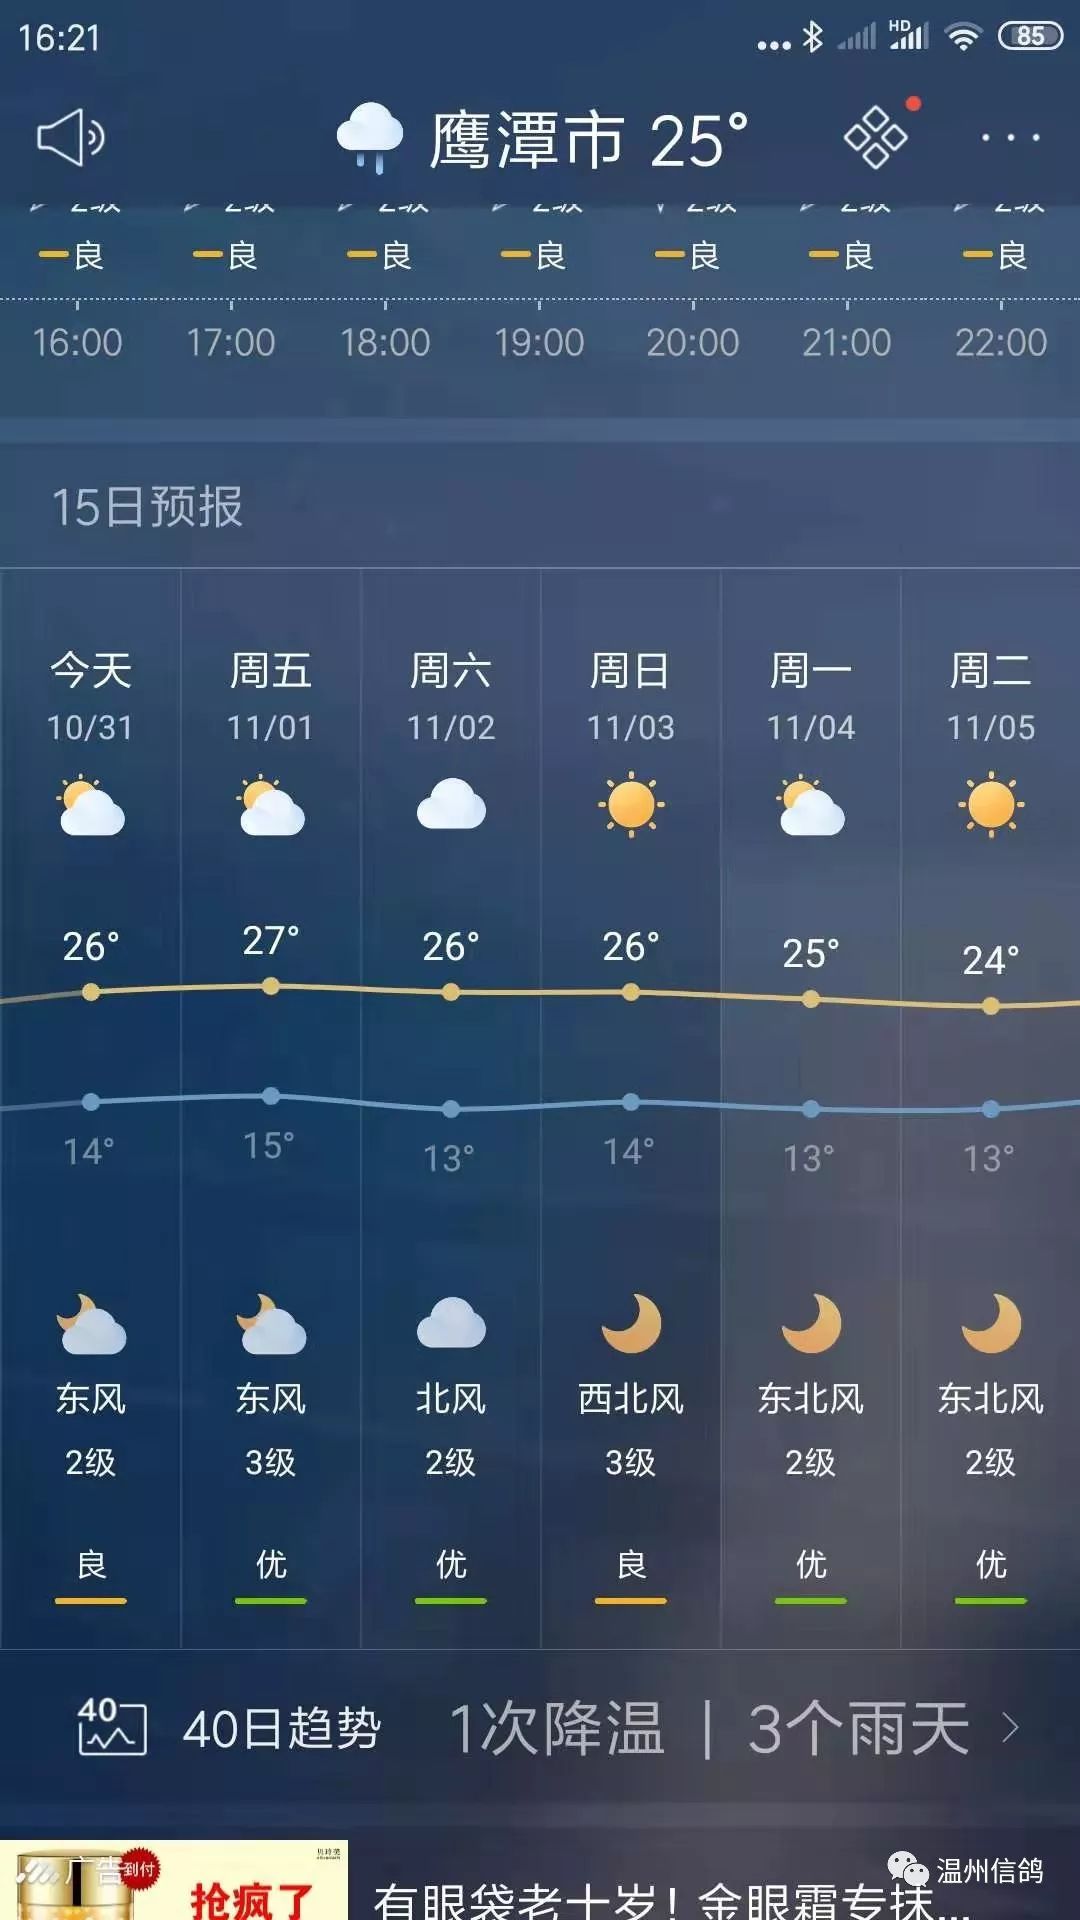 67据天气预报11月2日江西鹰潭天气阴天不利赛鸽训放因此70周年纪念